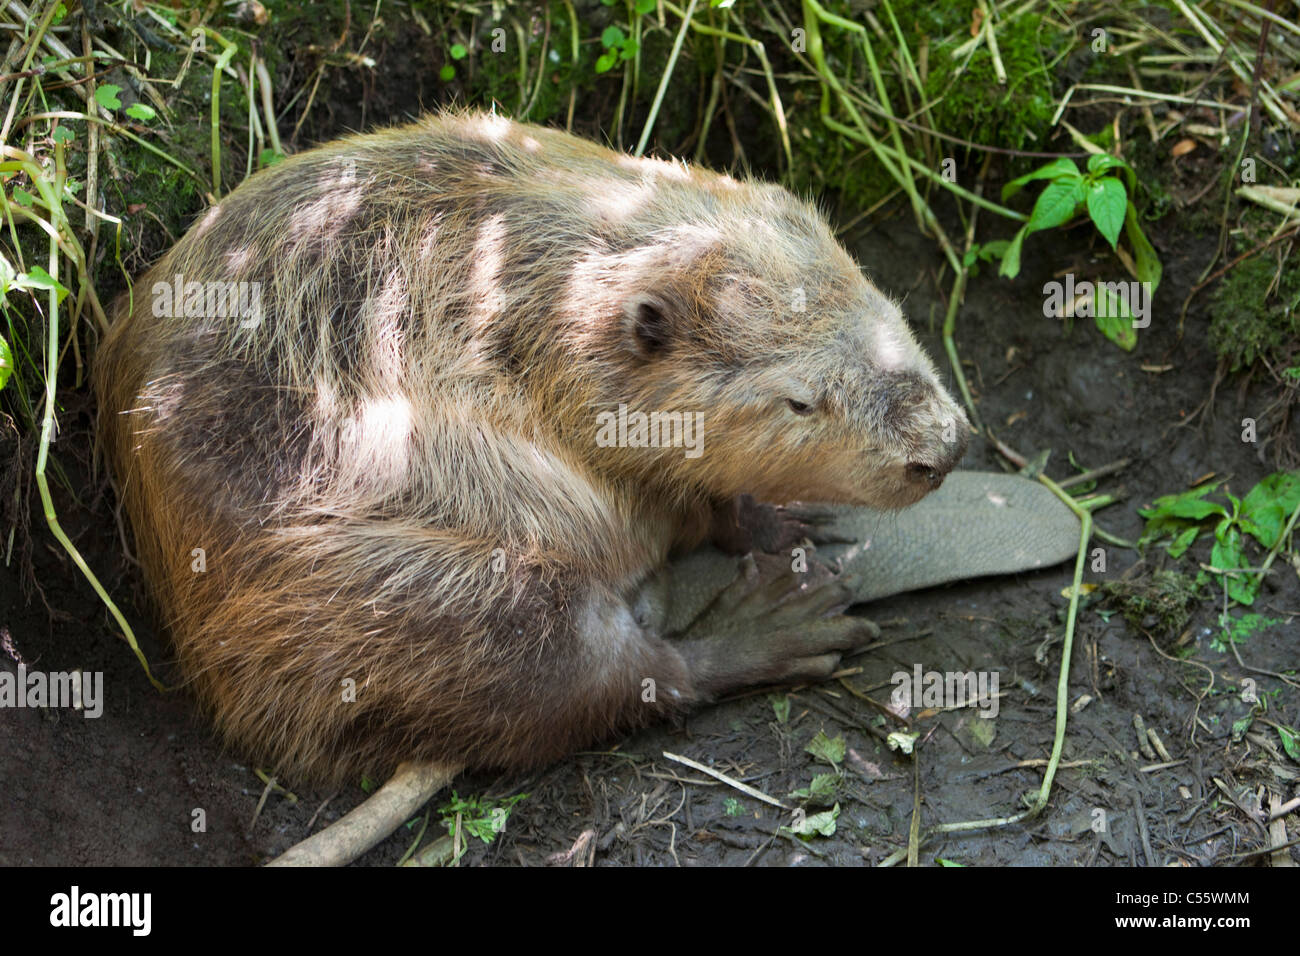 The Netherlands, Werkendam, De Biesbosch national park. Beaver, Genus Castor. Stock Photo